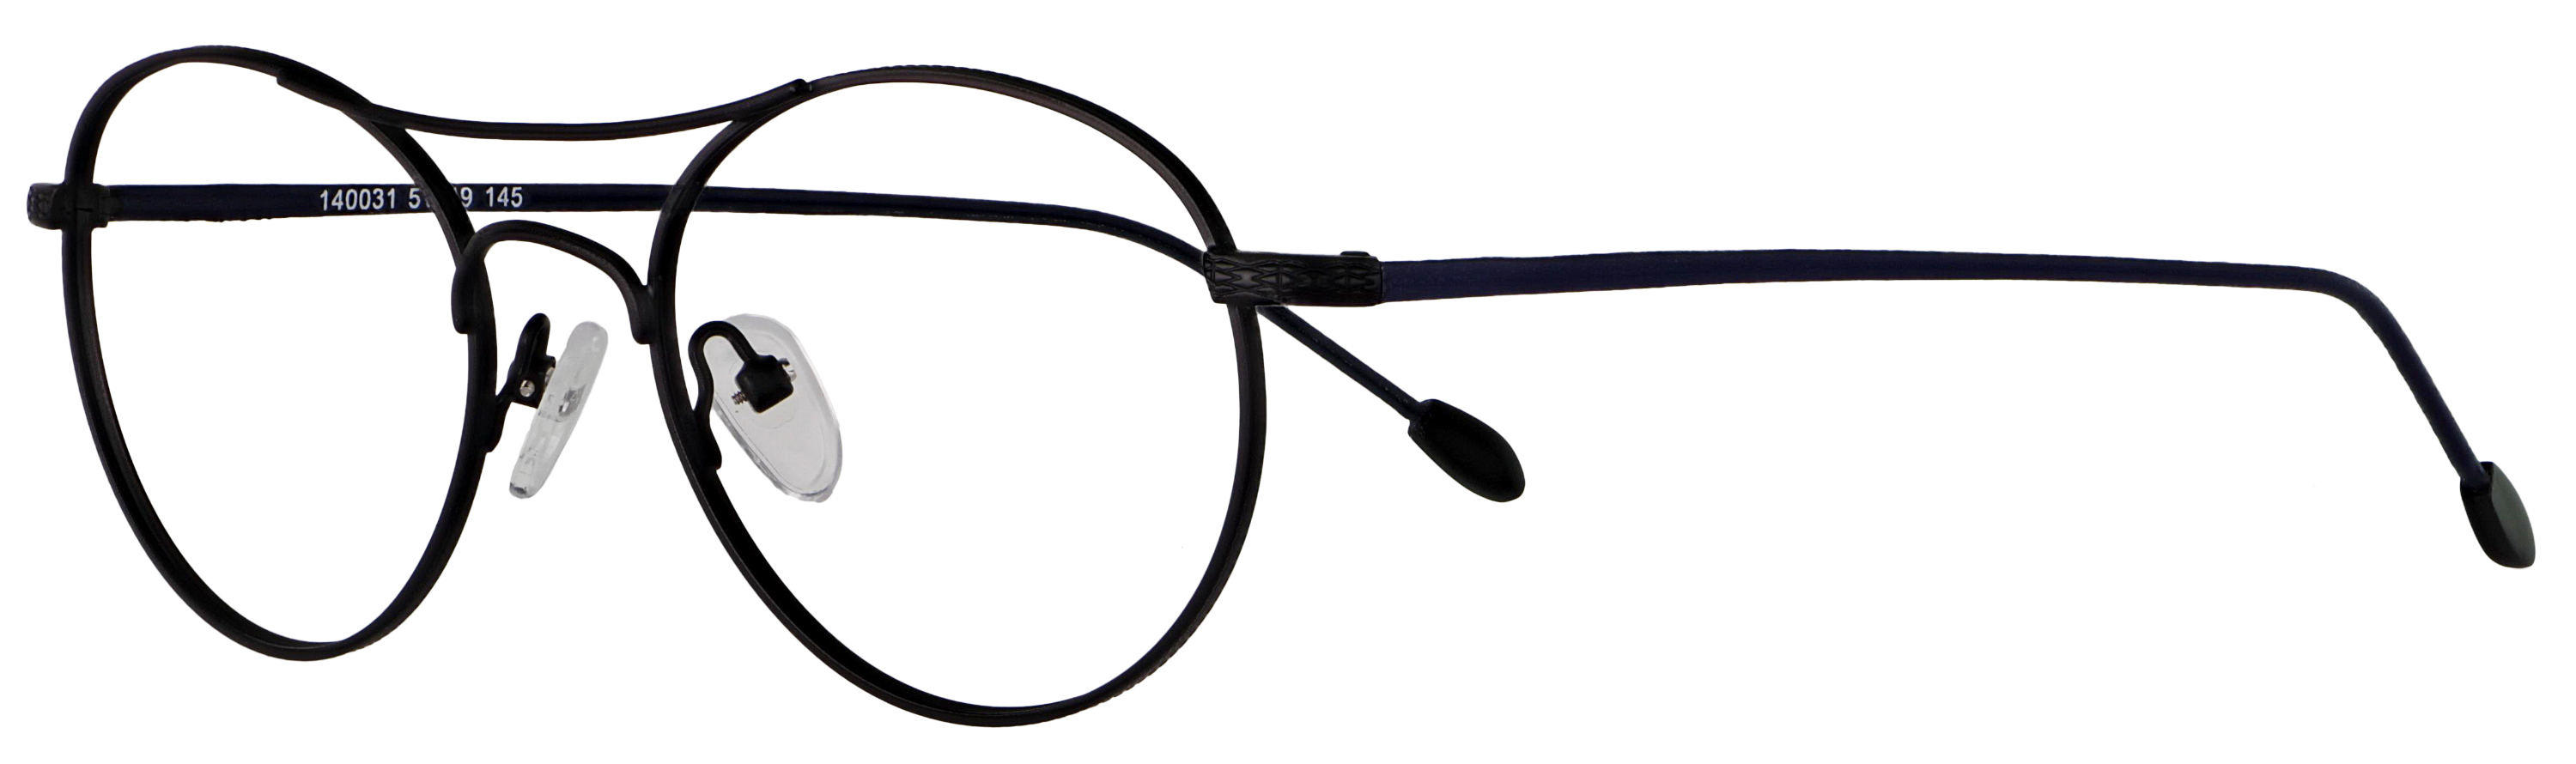 Das Bild zeigt die Korrektionsbrille 140031 von der Marke Abele Optik in schwarz matt /Bügel: dunkelblau.